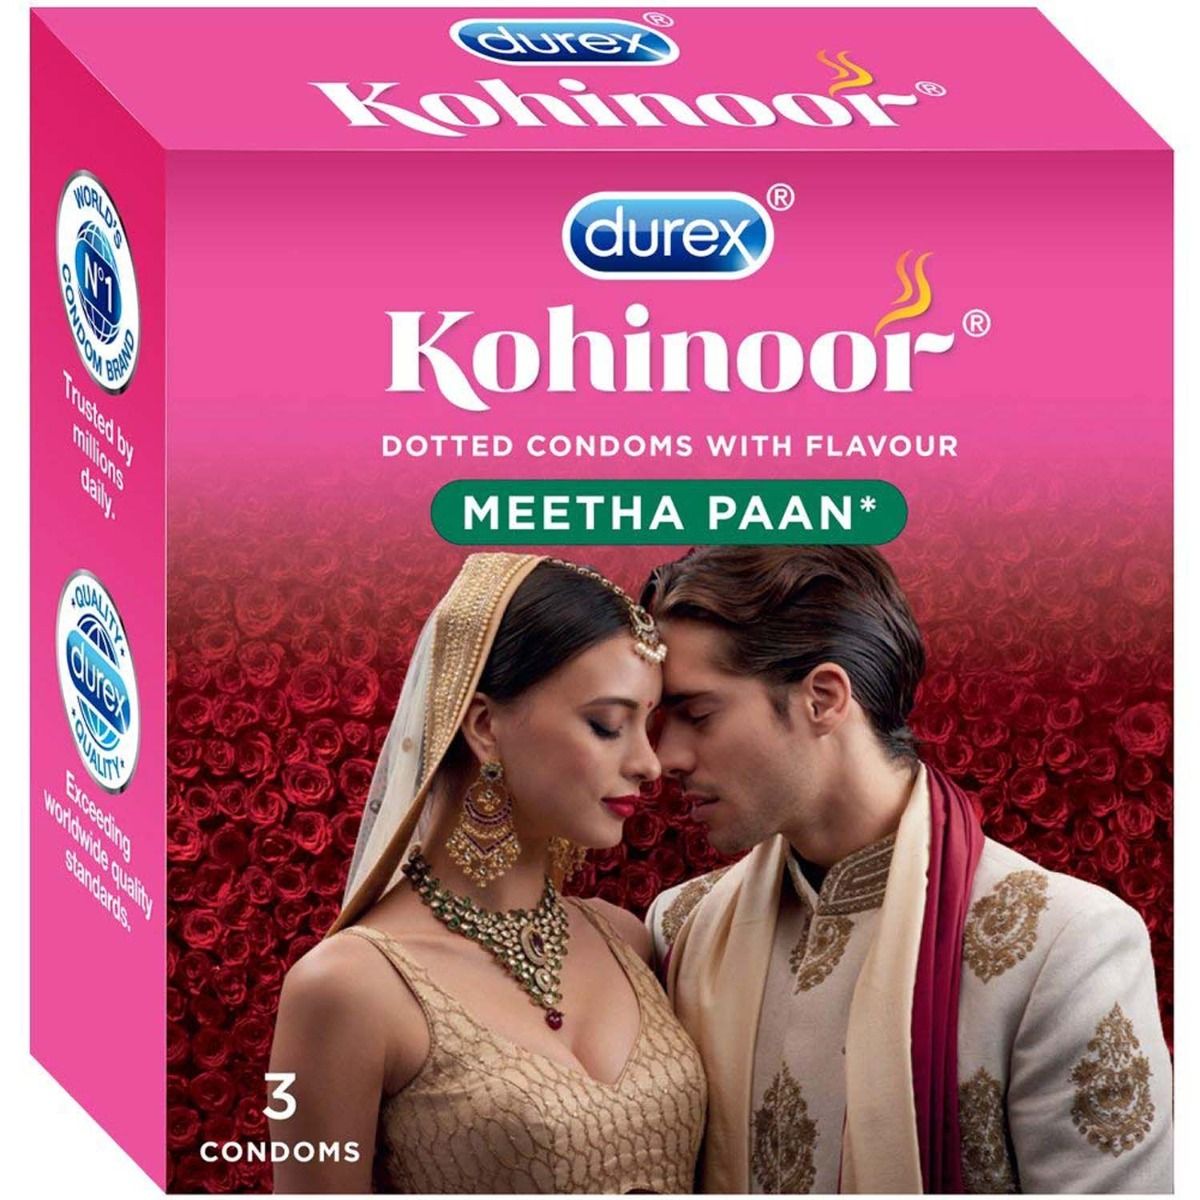 Buy Durex Kohinoor Meetha Paan Flavoured Dotted Condoms, 3 Count Online